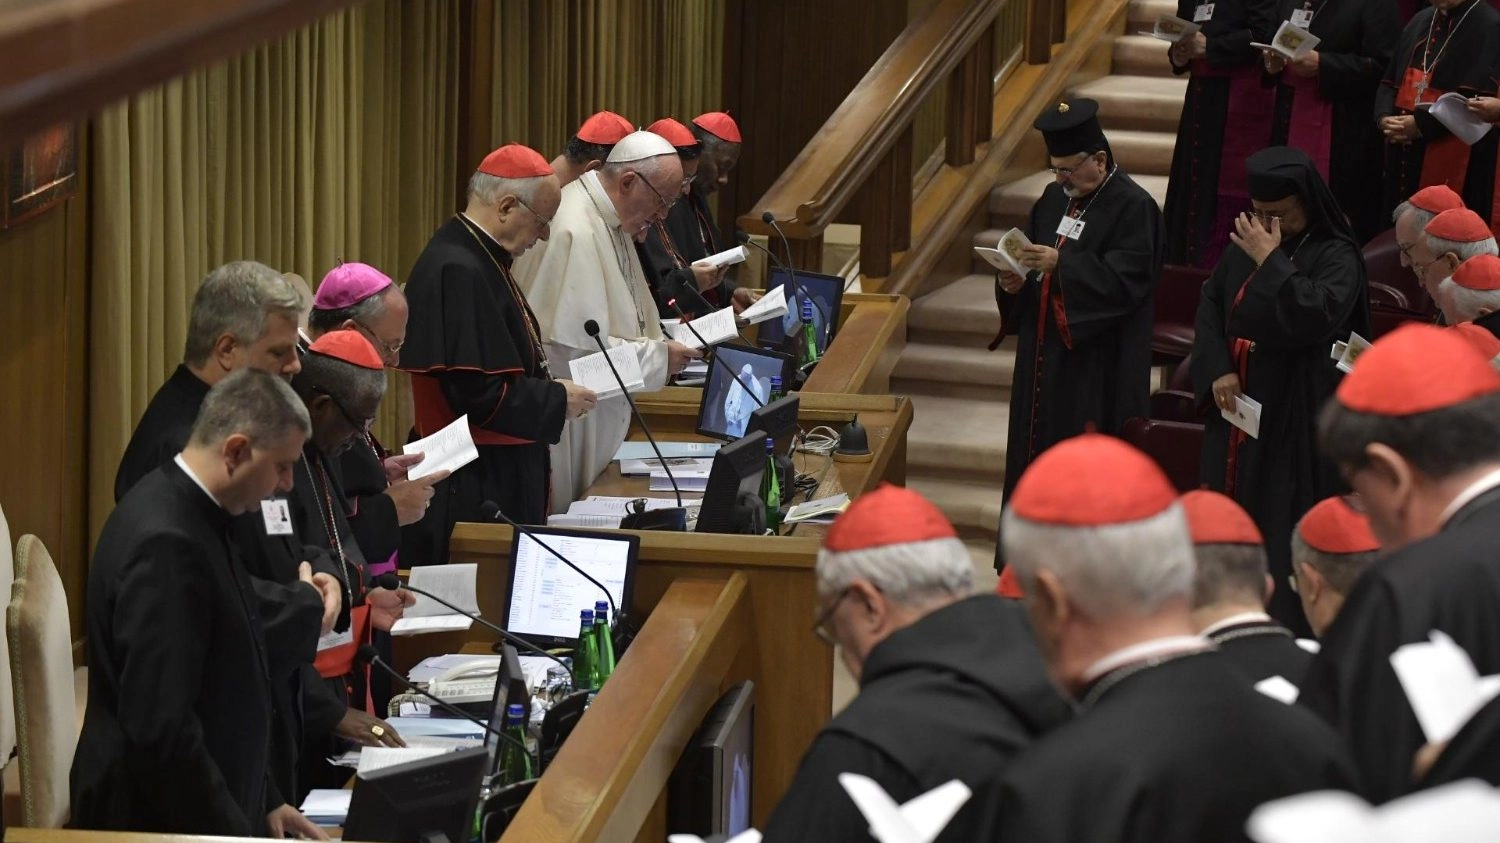 Papa Francesco assieme a vescovi e cardinali durante un’assemblea sinodale